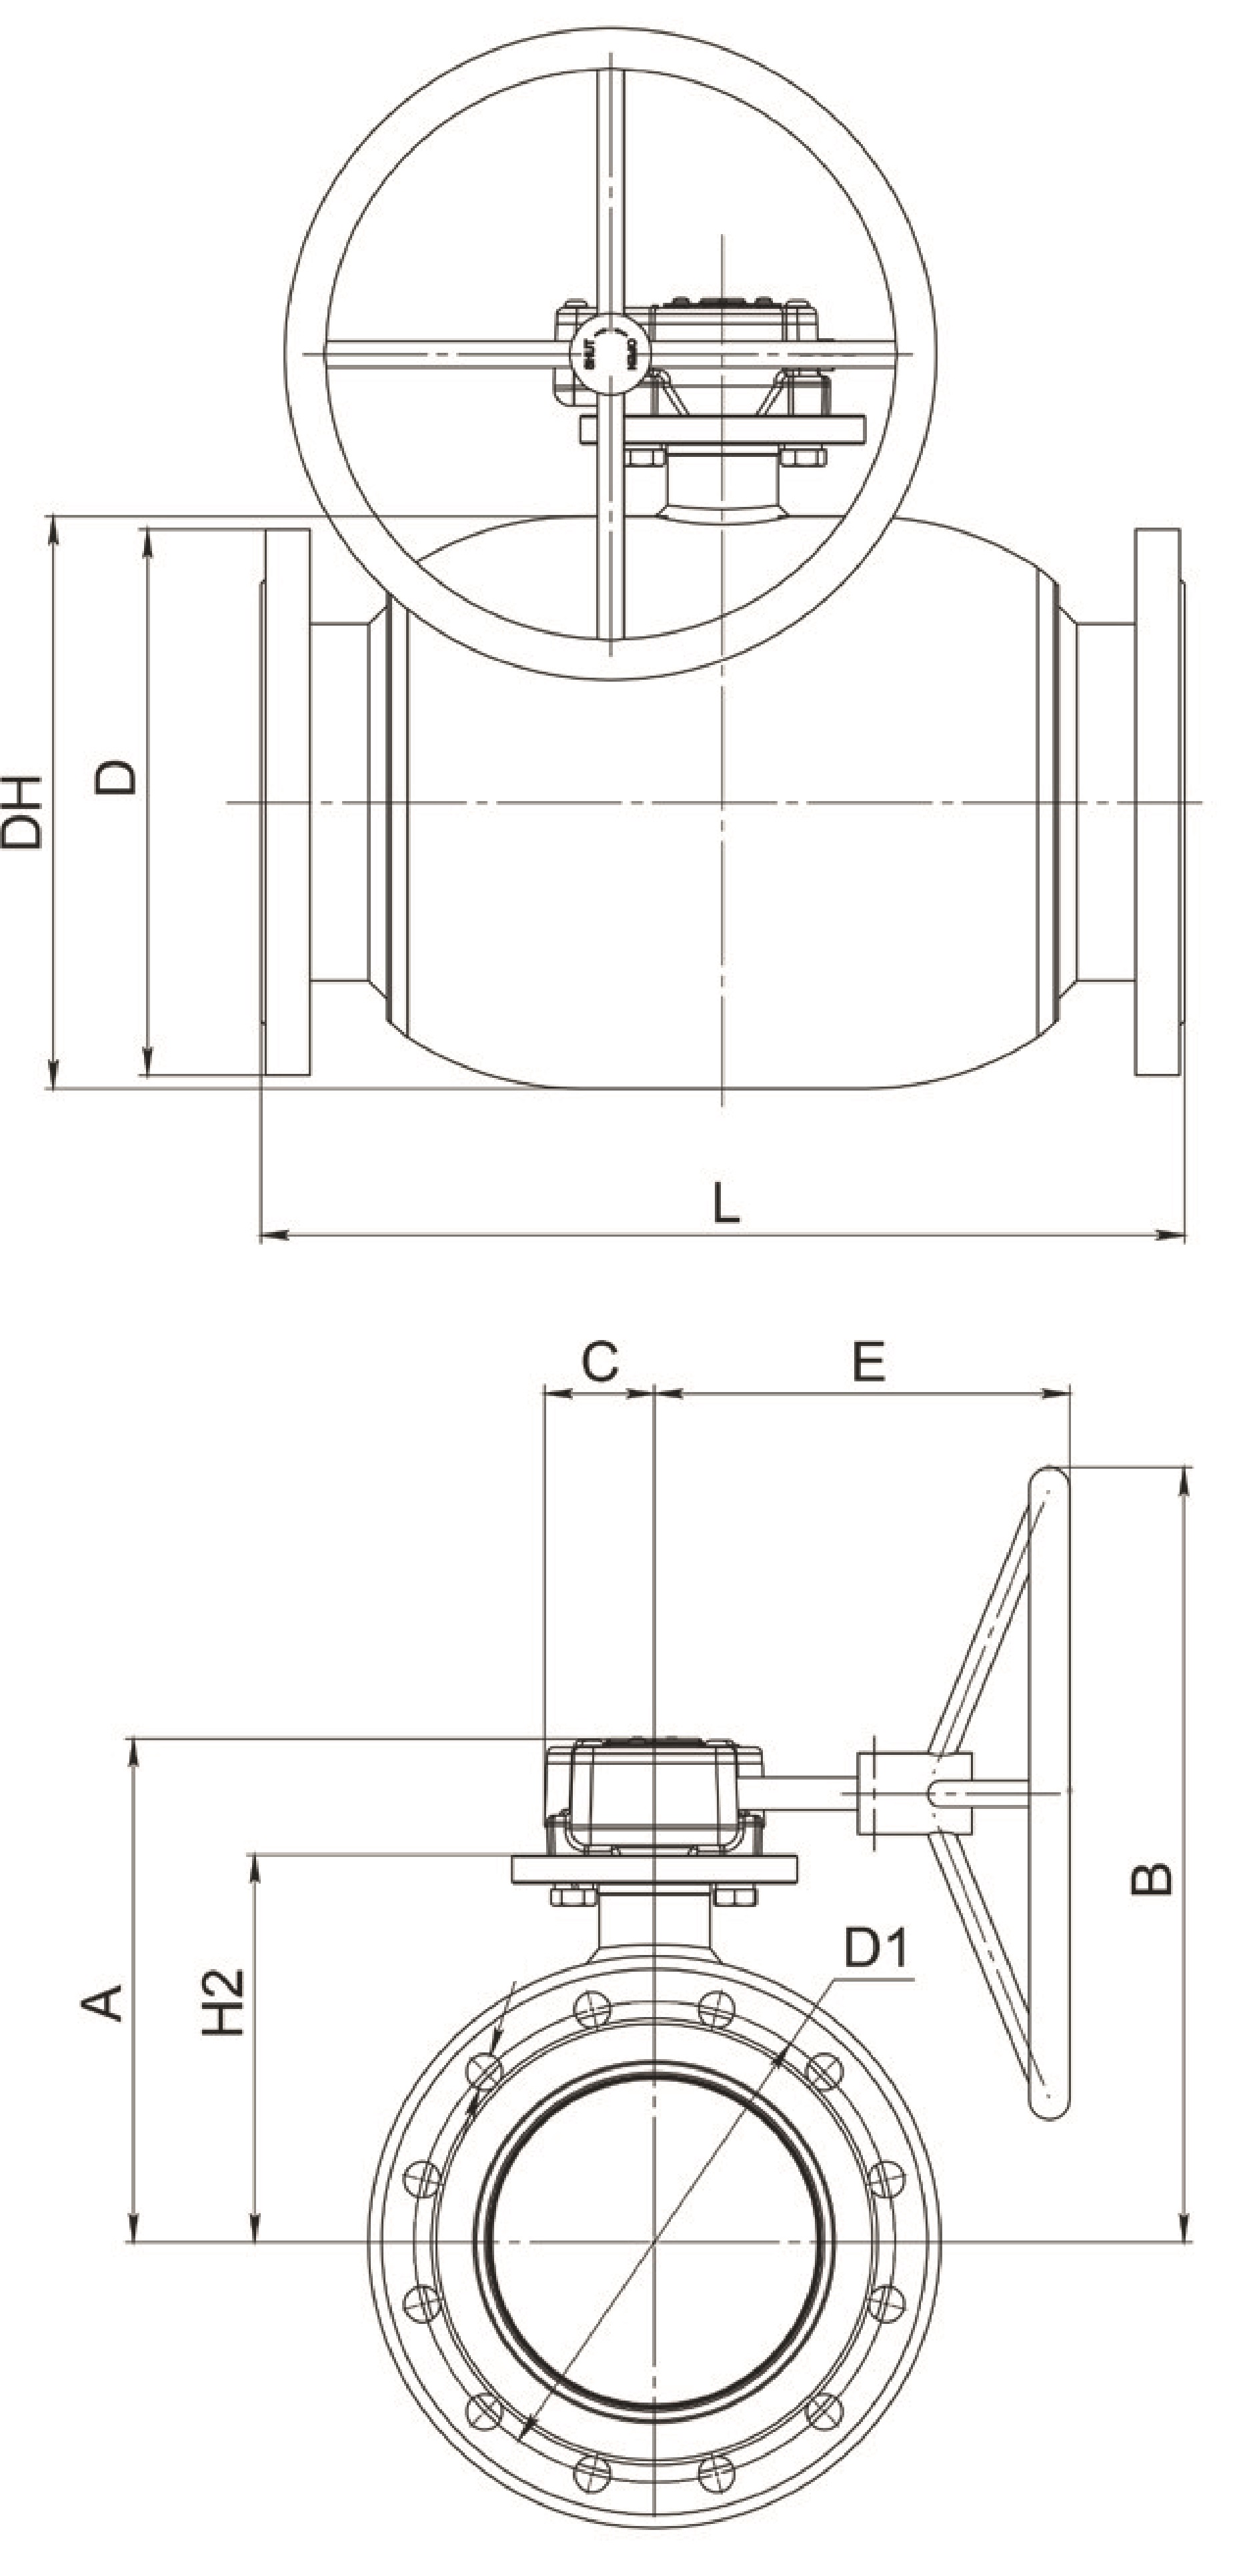 Кран шаровый Broen Ballomax-КШТ61.113.Р.16 Ду150 Ру16 полнопроходный с плавающим шаром, с ISO фланцем, корпус - сталь, уплотнение - EPDM, фланцевый, с редуктором